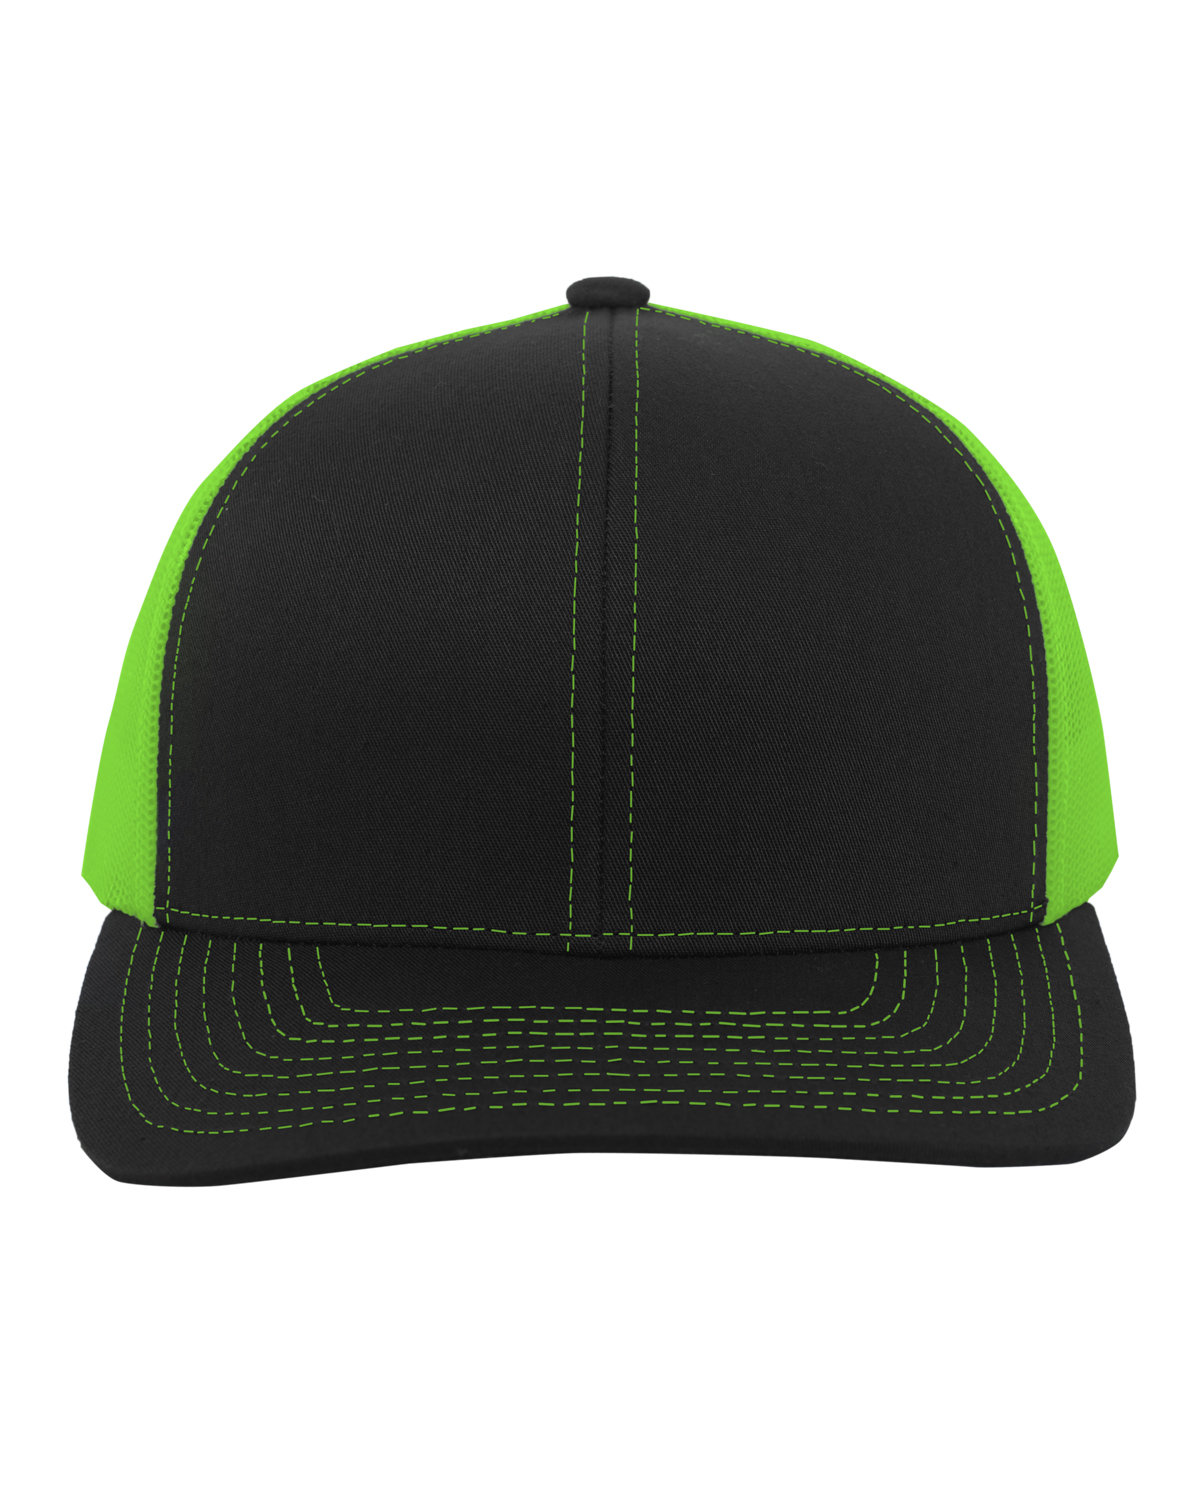 Pacific Headwear Trucker Snapback Hat BLACK/ NEON GRN 